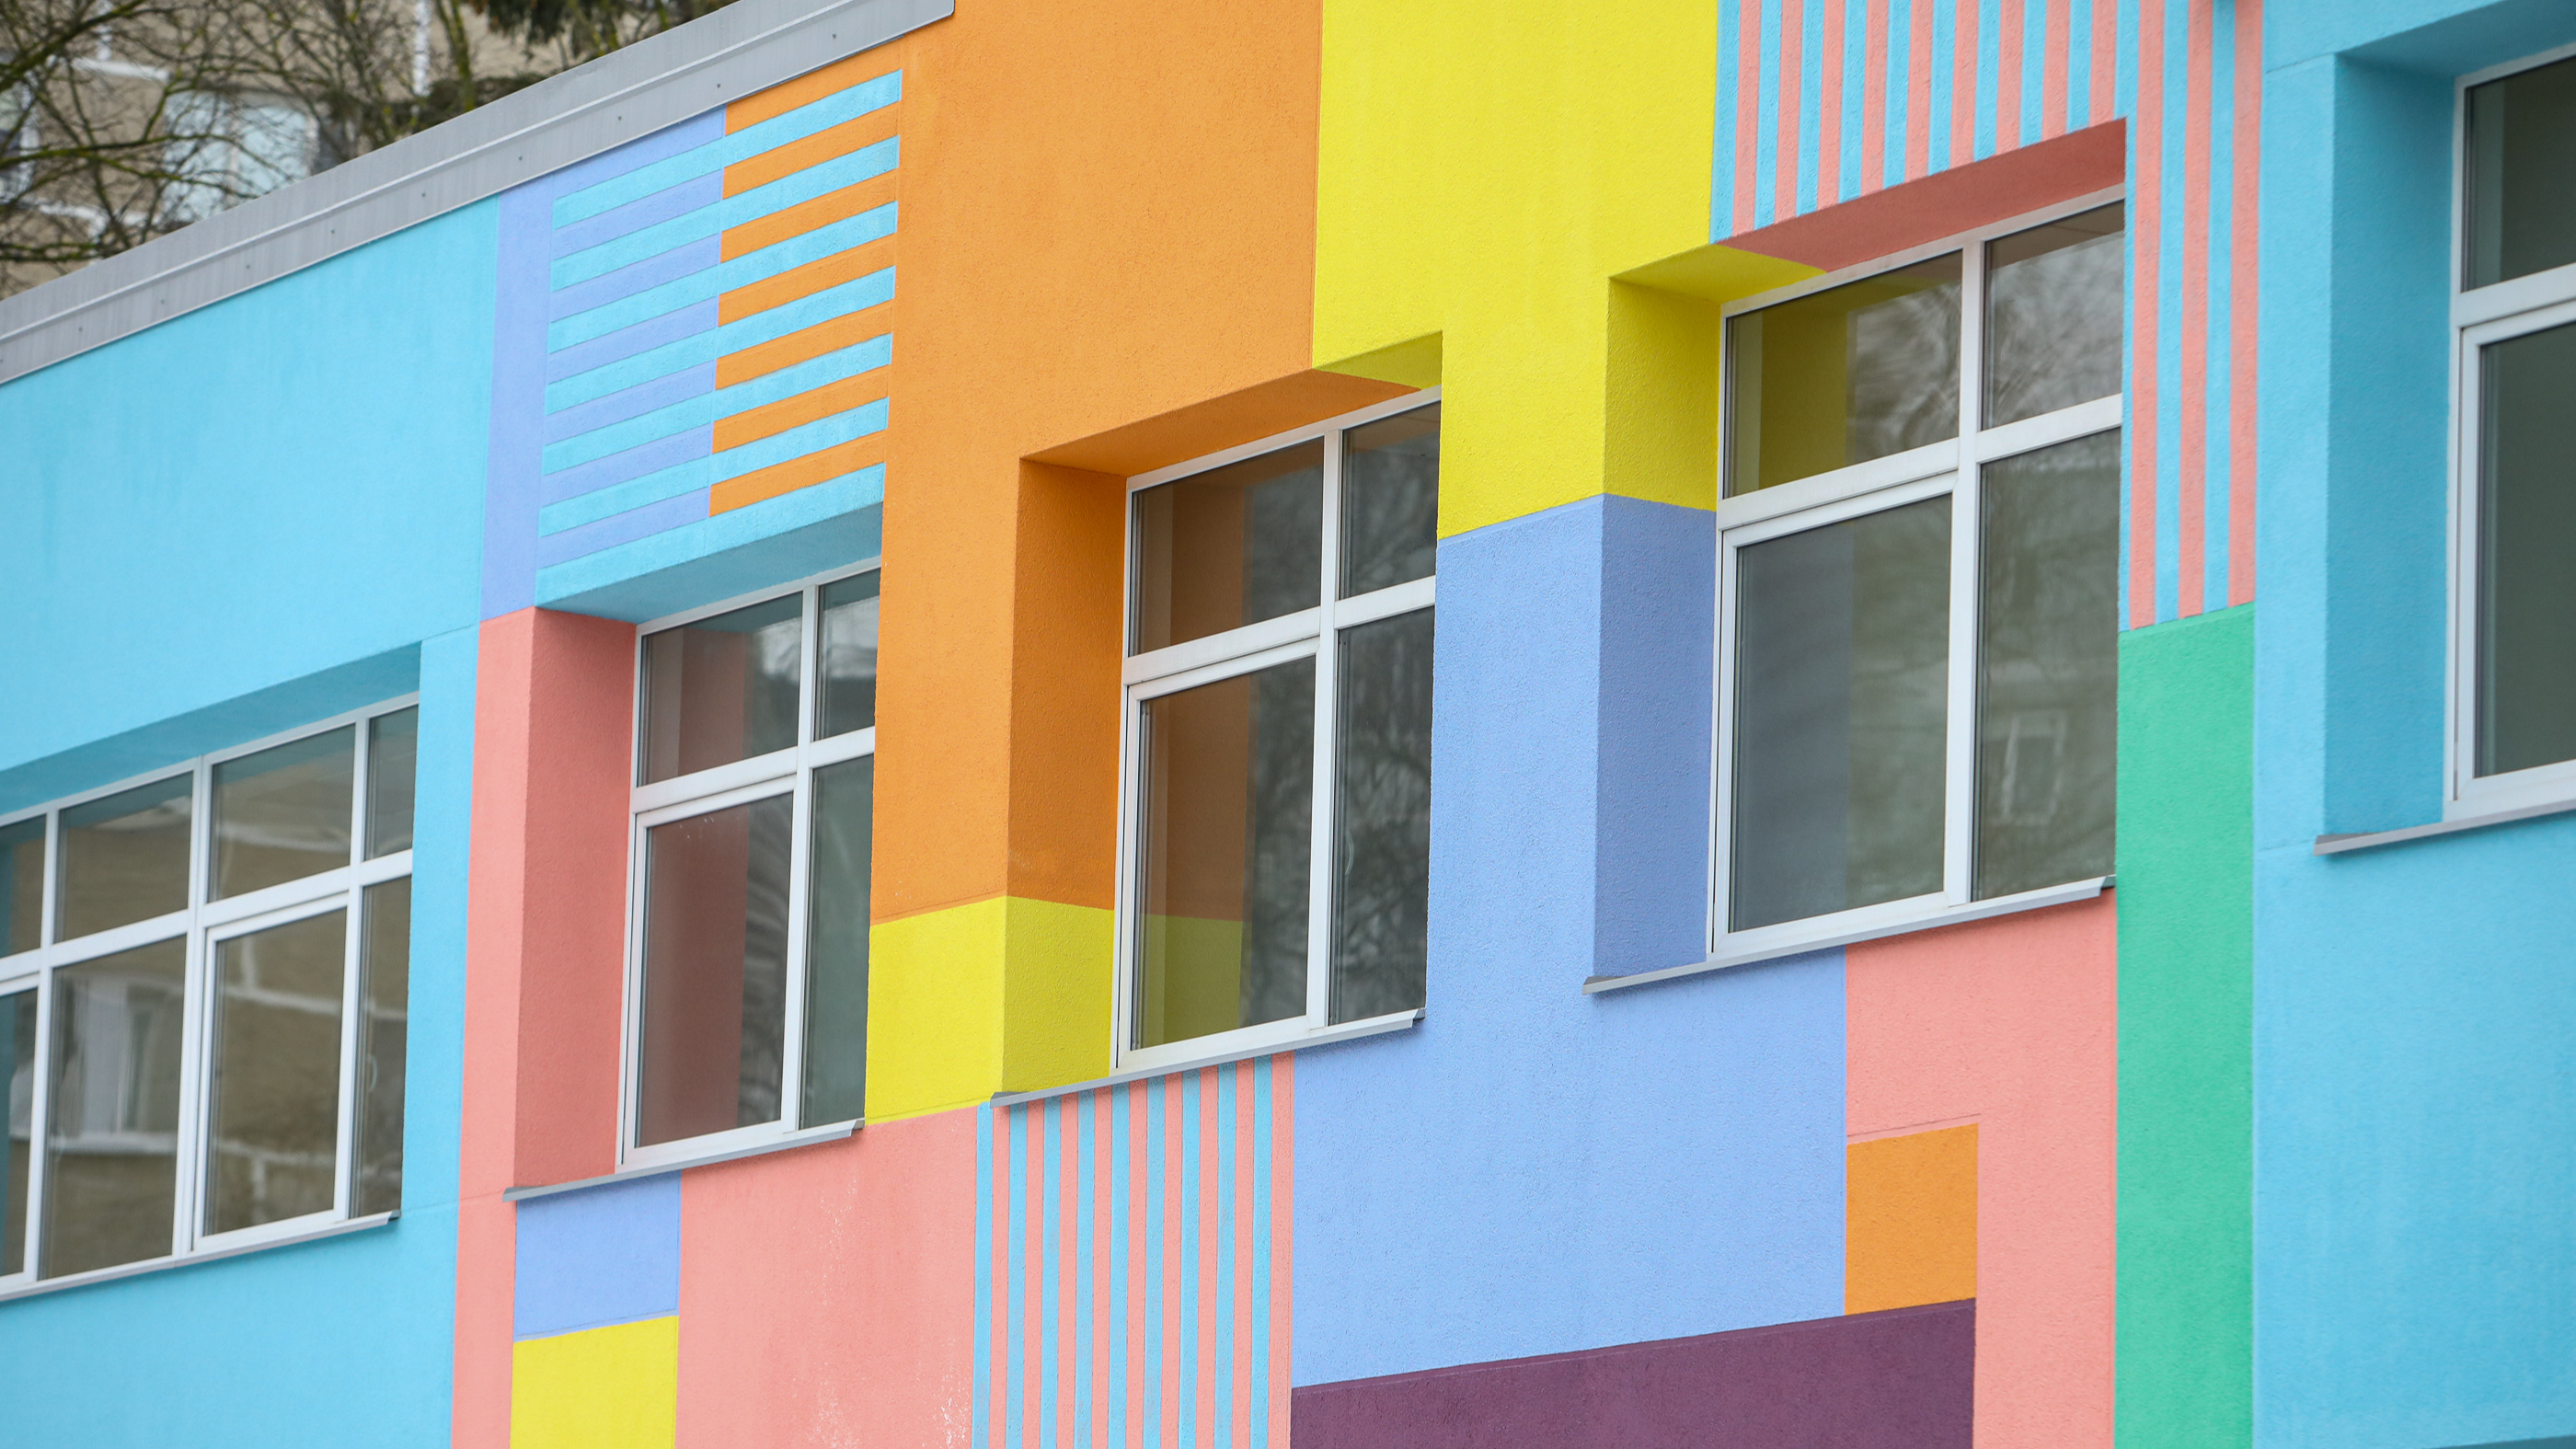 Rīgā uzbūvēti divi jauni bērnudārzi; darbu sāks rudenī   